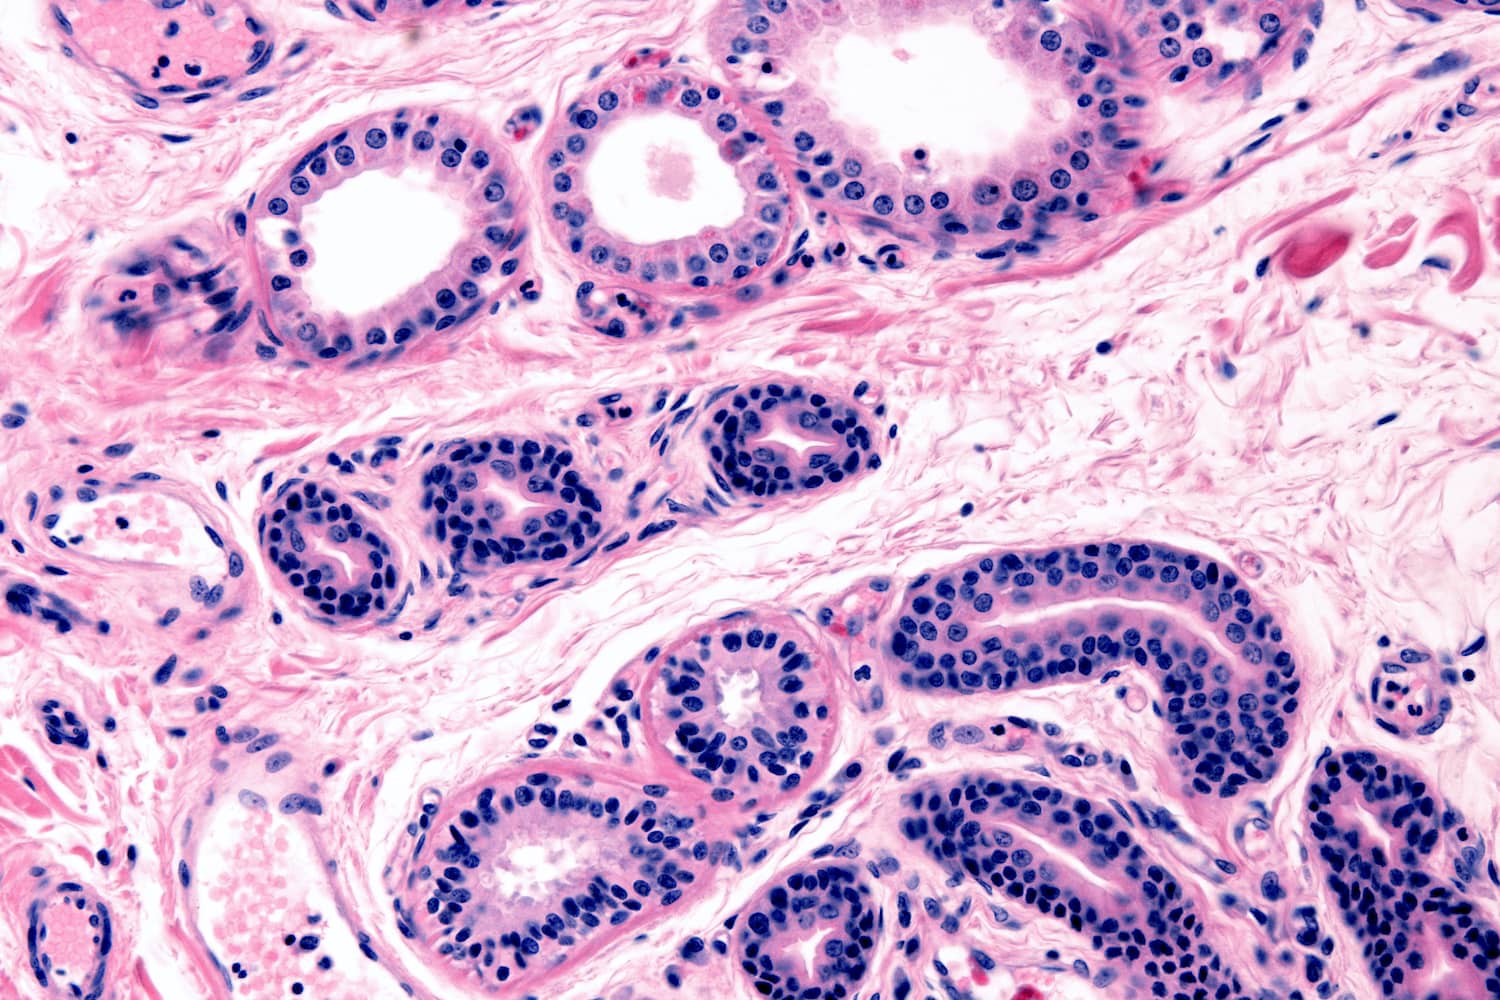 Apokrin (fent) és ekrin (lent) mirigyek emberi bőrszövet mikroszkópos keresztmetszeti képén